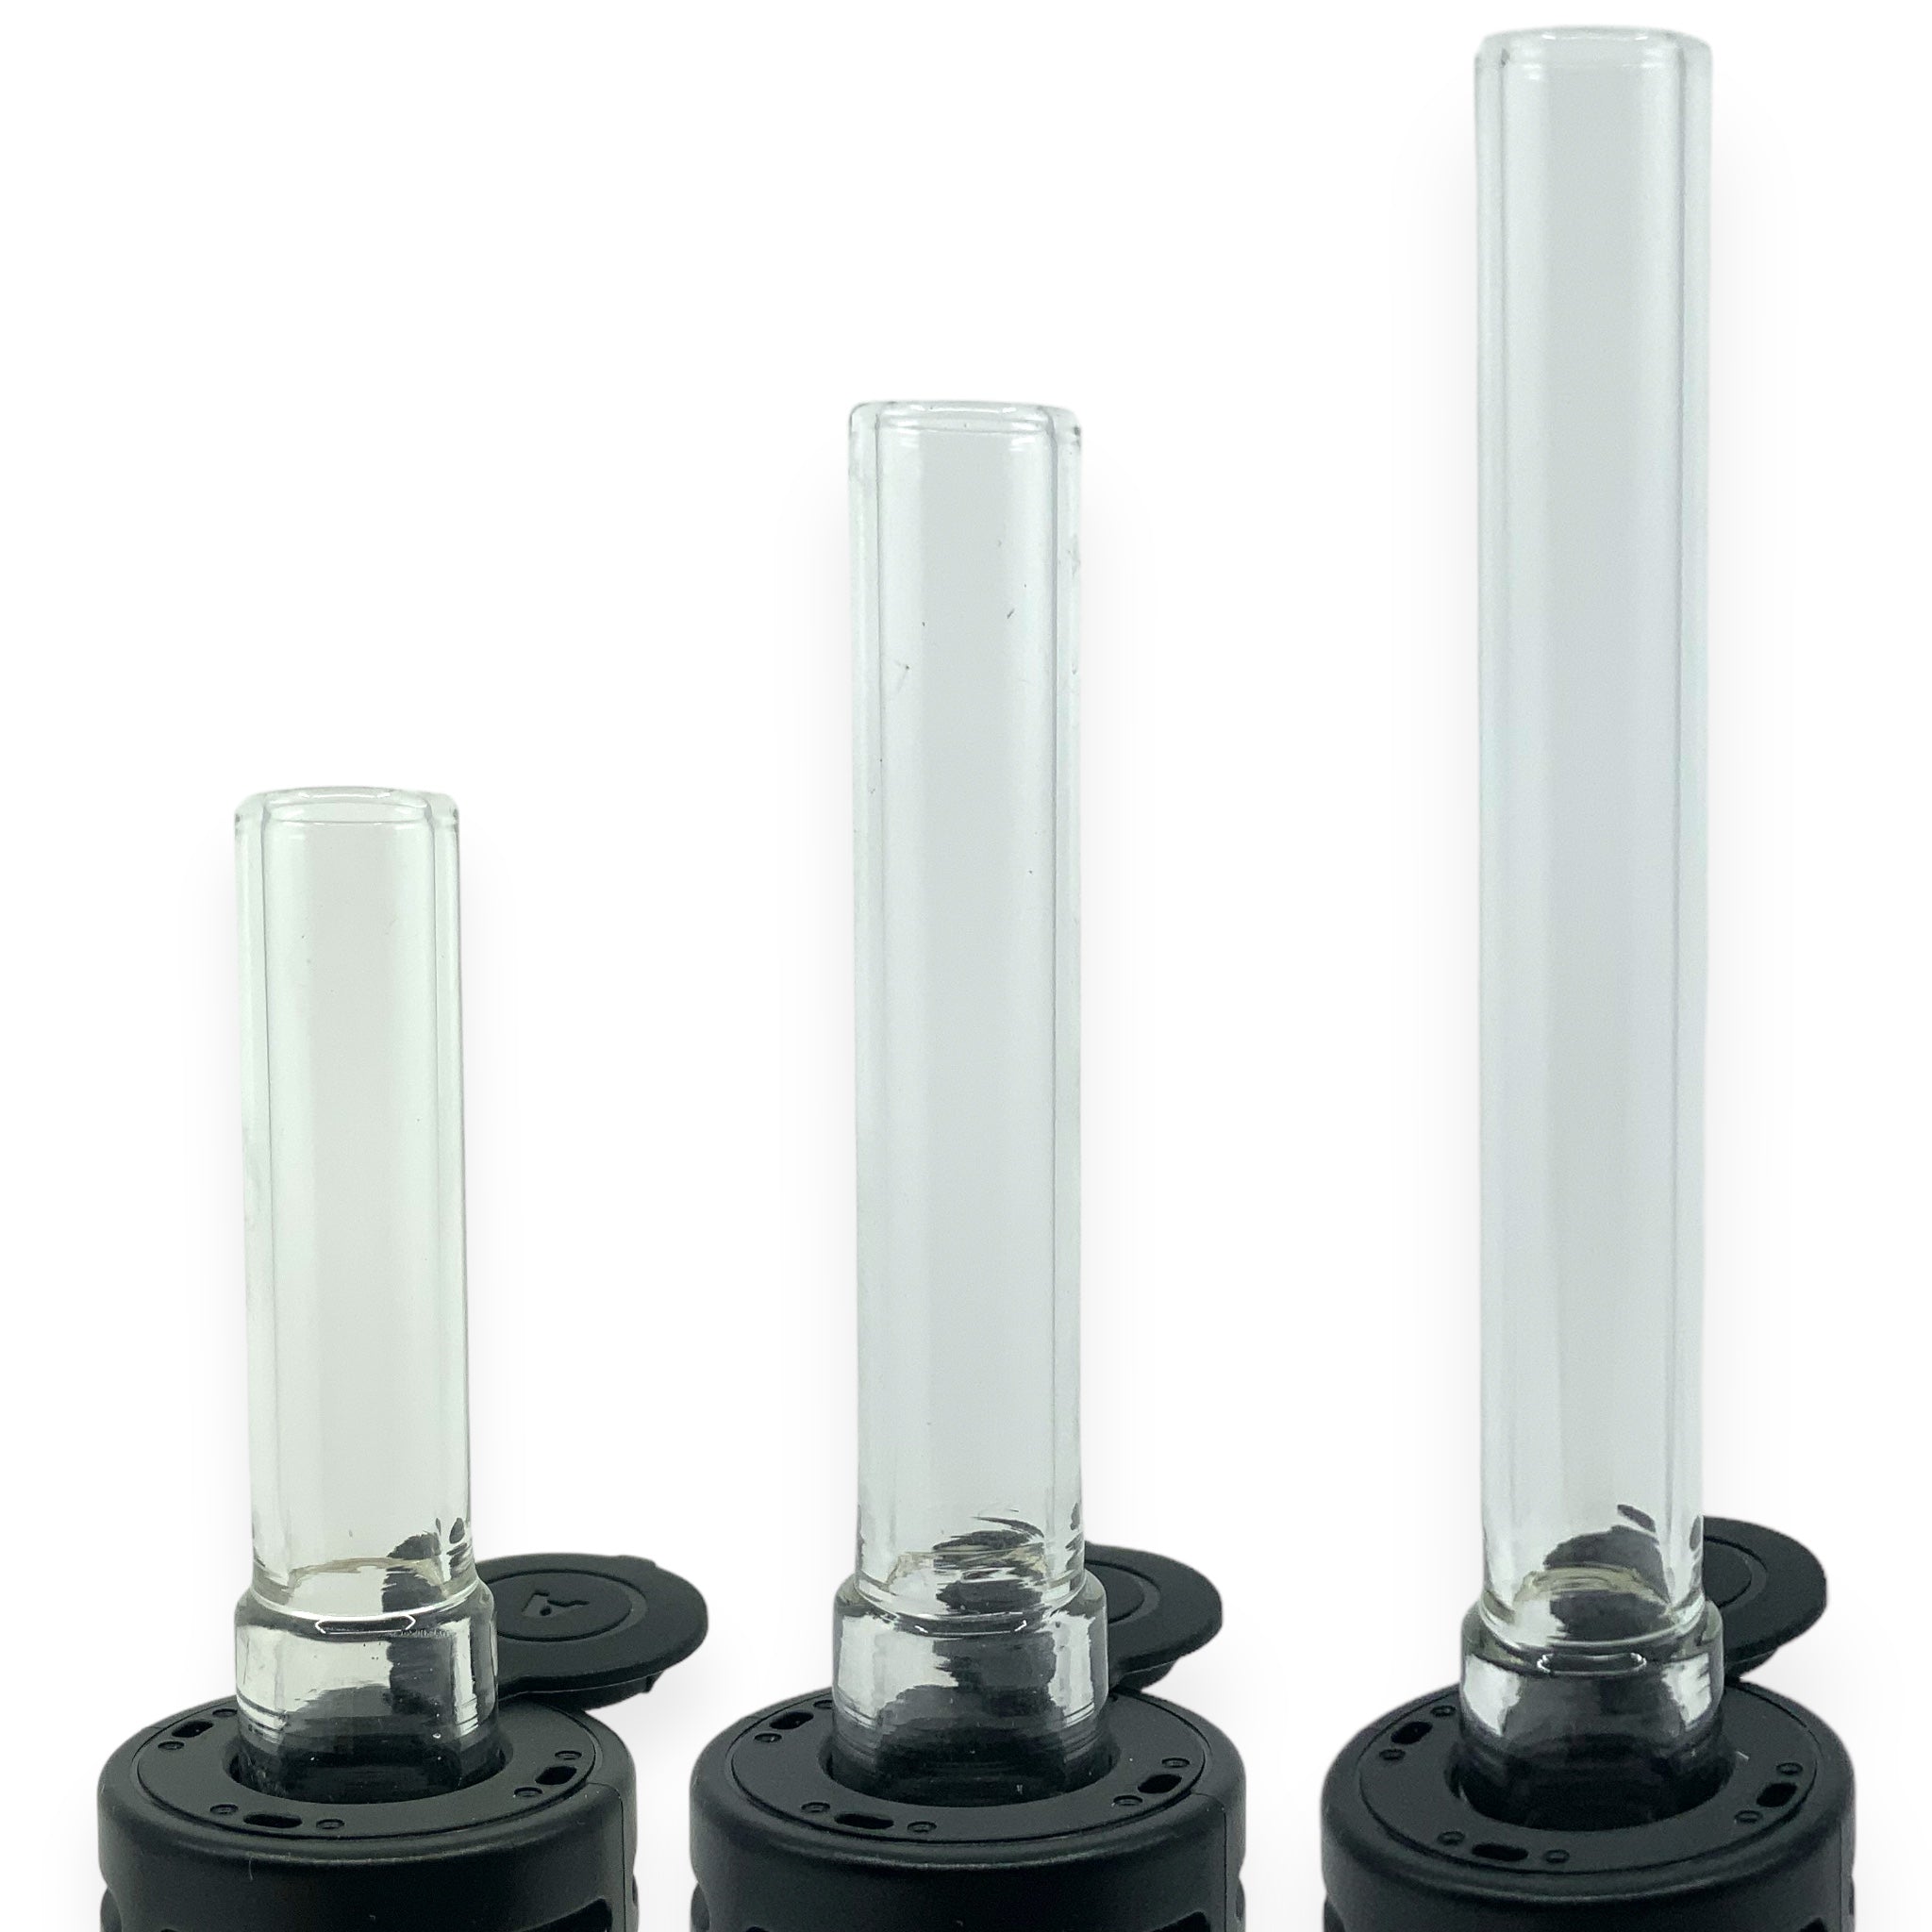 Vapotools by 157Grad Arizer Glasmundstücke in 70mm, 90mm und 110mm eingesetzt in Vaporizer